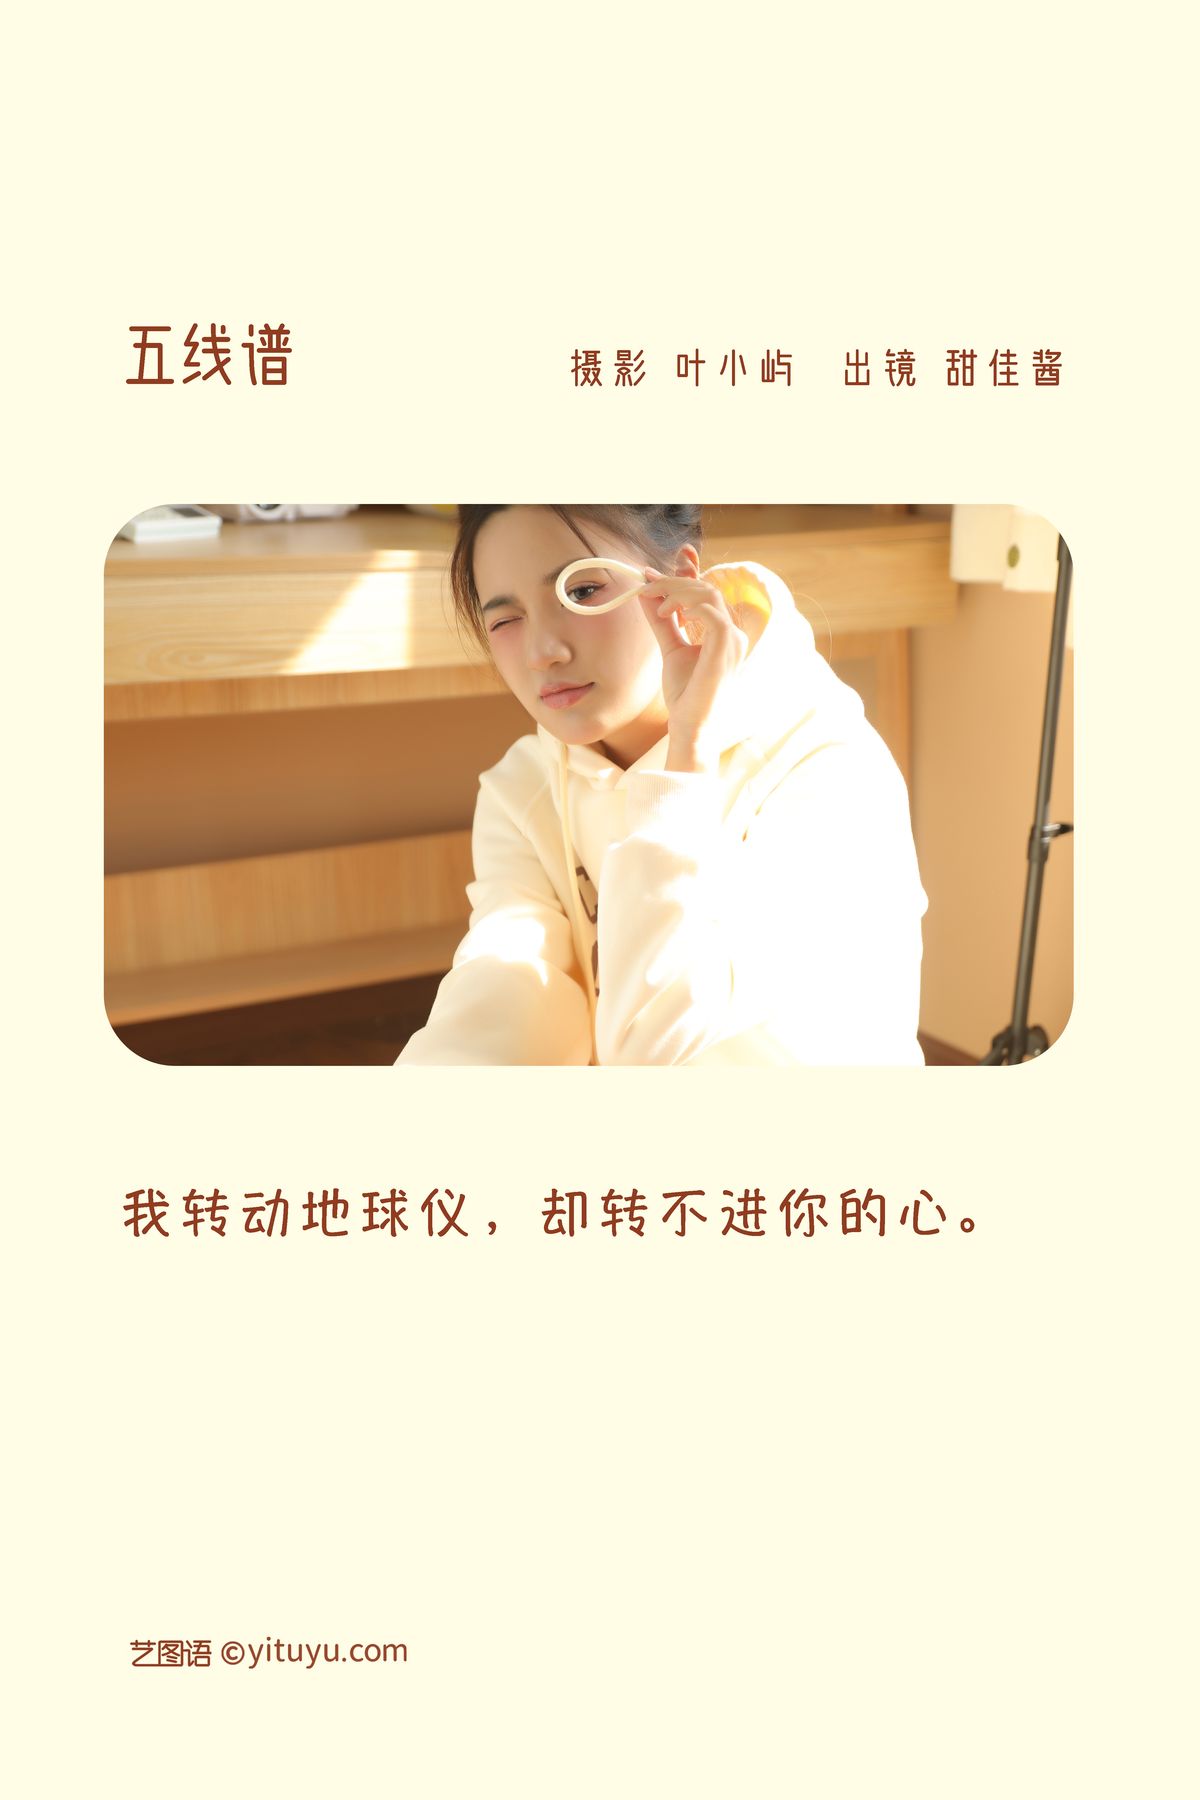 YiTuYu艺图语 Vol 3048 Tian Jia Jiang 0001 2893341622.jpg